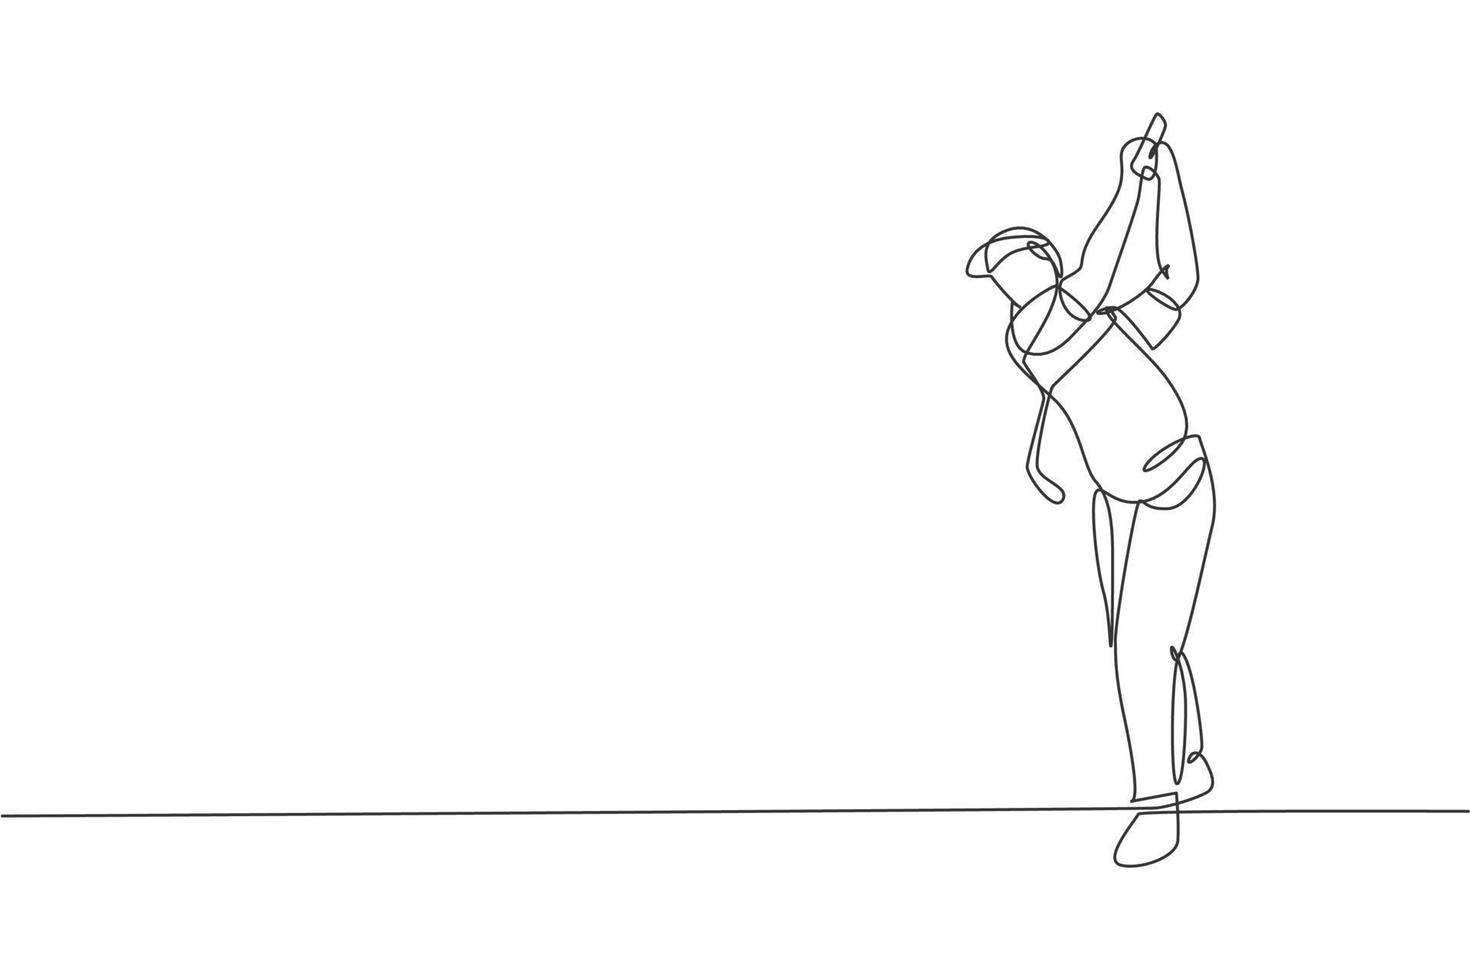 een doorlopende lijntekening van een jonge golfspeler die golfclub zwaait en de bal raakt. vrijetijdssport concept. dynamische enkele lijn tekenen ontwerp vector illustratie afbeelding voor toernooi promotie media